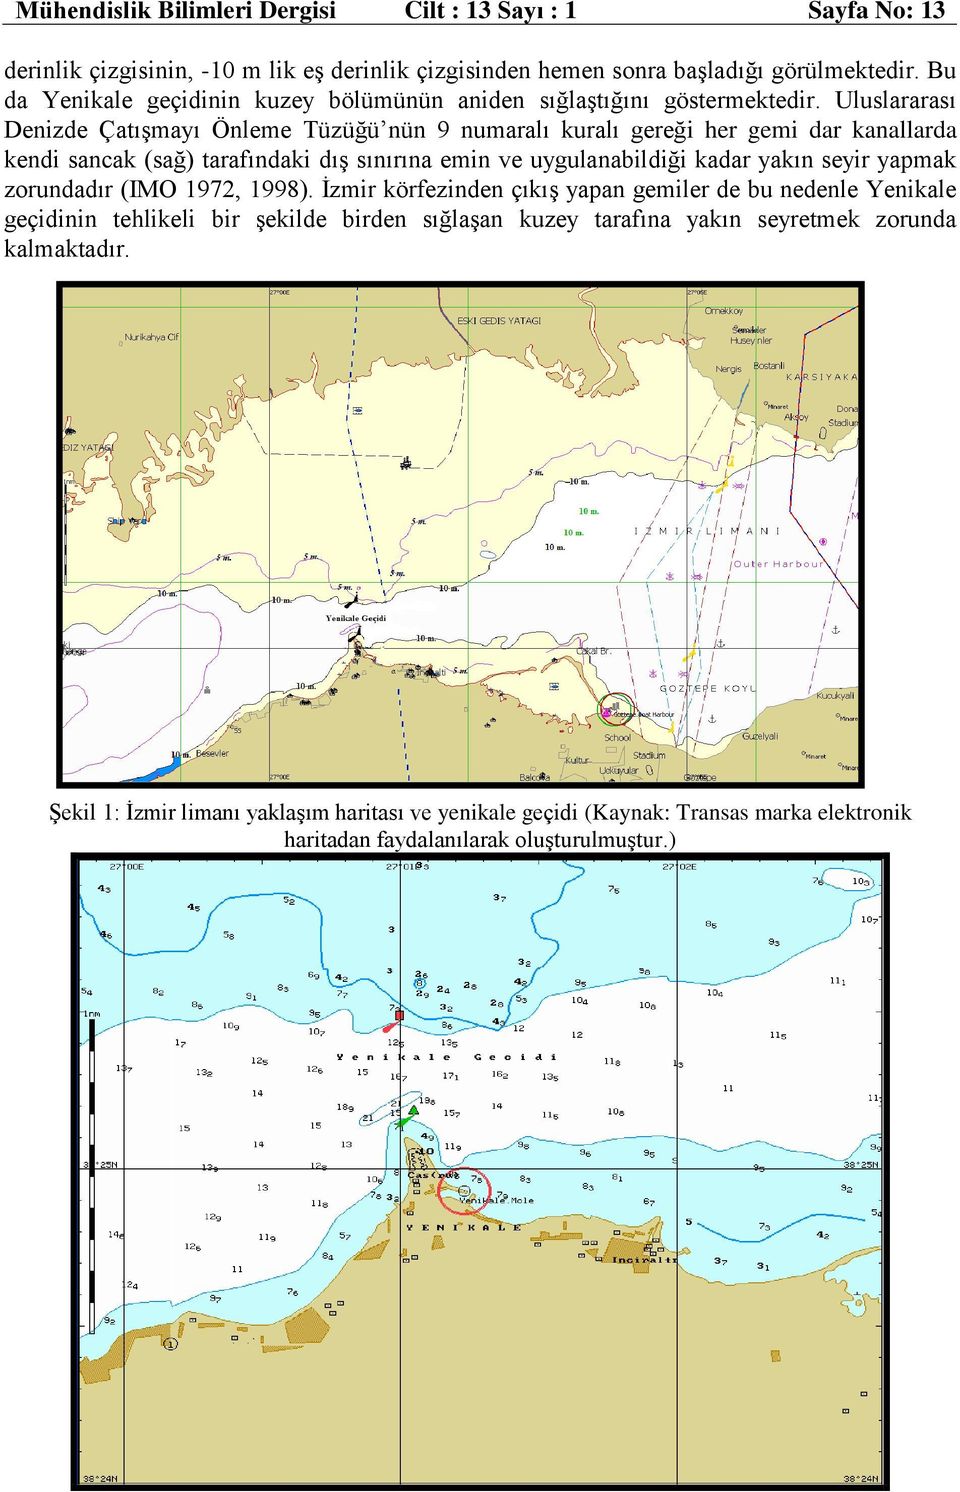 Uluslararası Denizde Çatışmayı Önleme Tüzüğü nün 9 numaralı kuralı gereği her gemi dar kanallarda kendi sancak (sağ) tarafındaki dış sınırına emin ve uygulanabildiği kadar yakın seyir yapmak